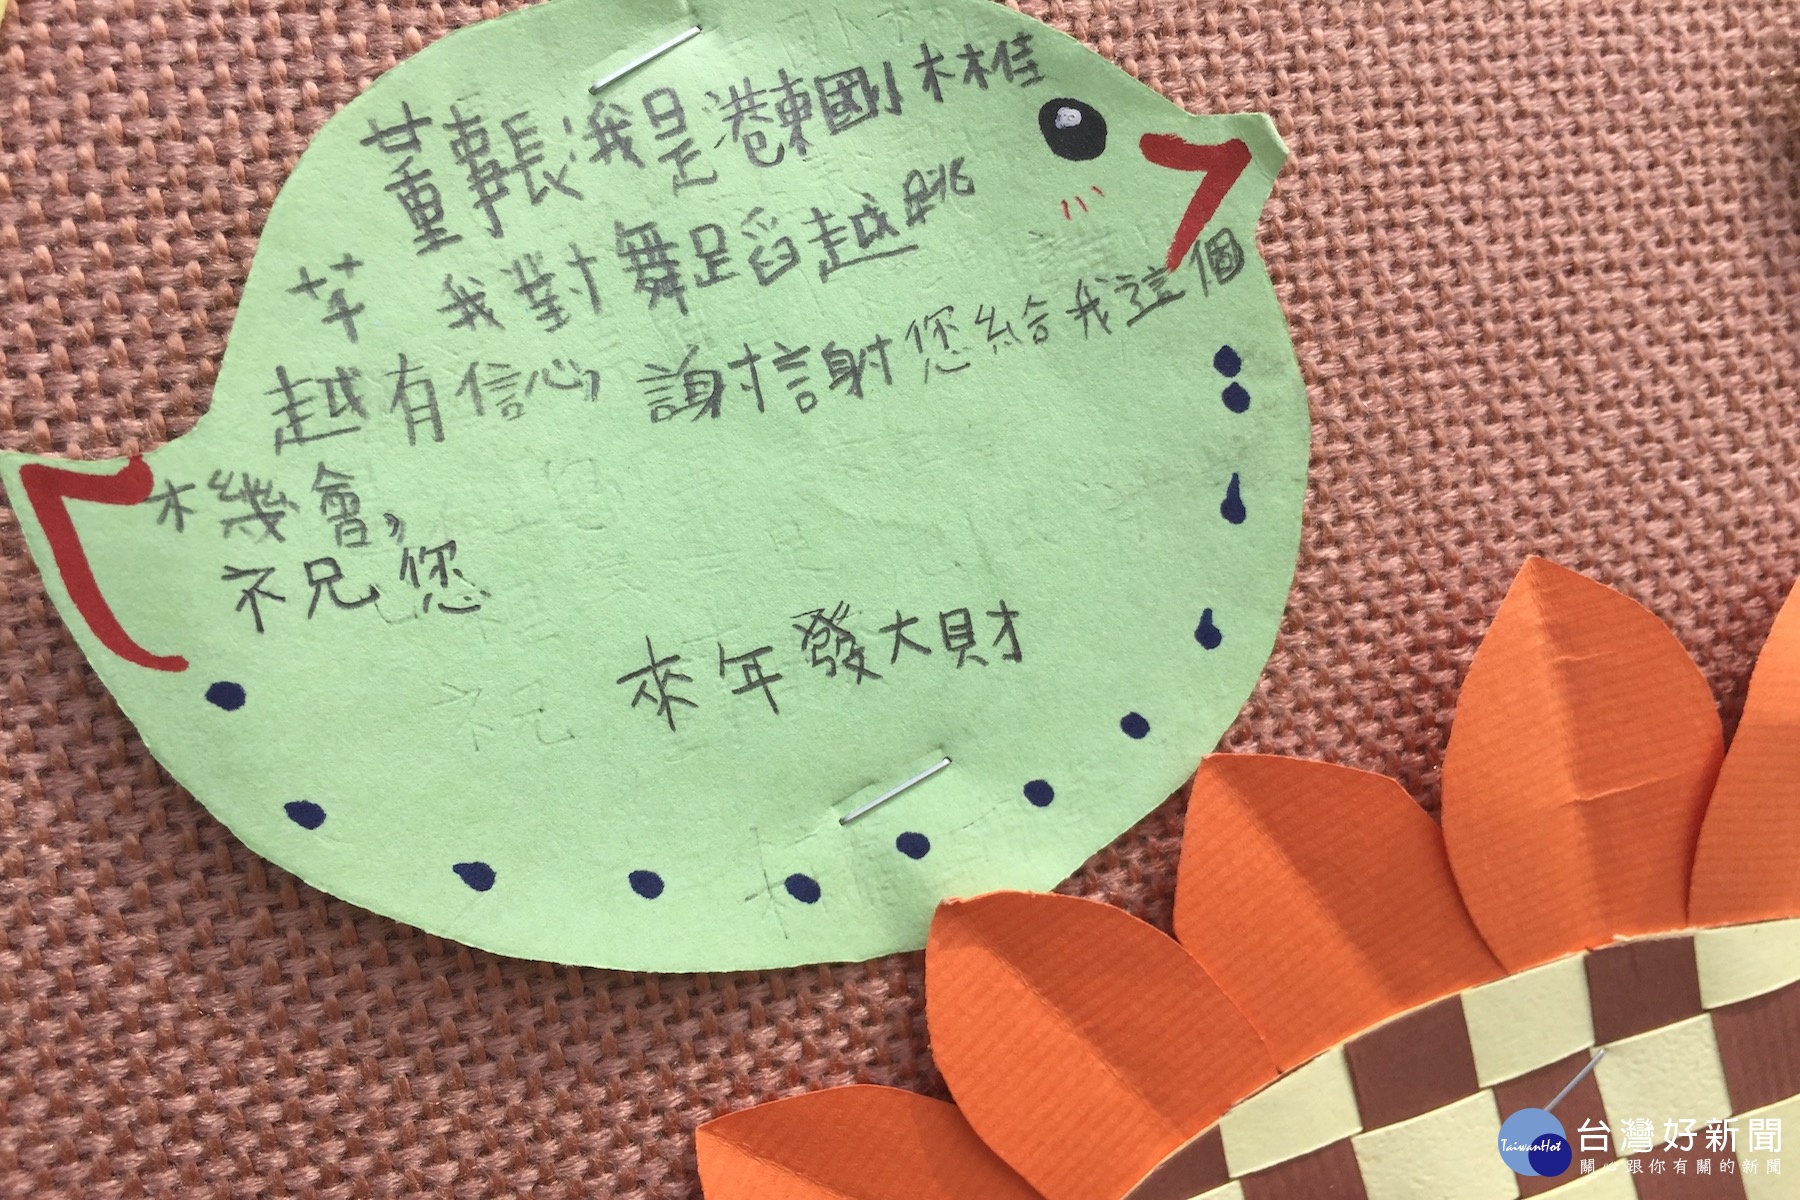 港東國小一群小朋友把對南寶董事長的感謝和愛全寫在小卡片上，展現童稚之心。(記者黃芳祿/黃芳祿攝)